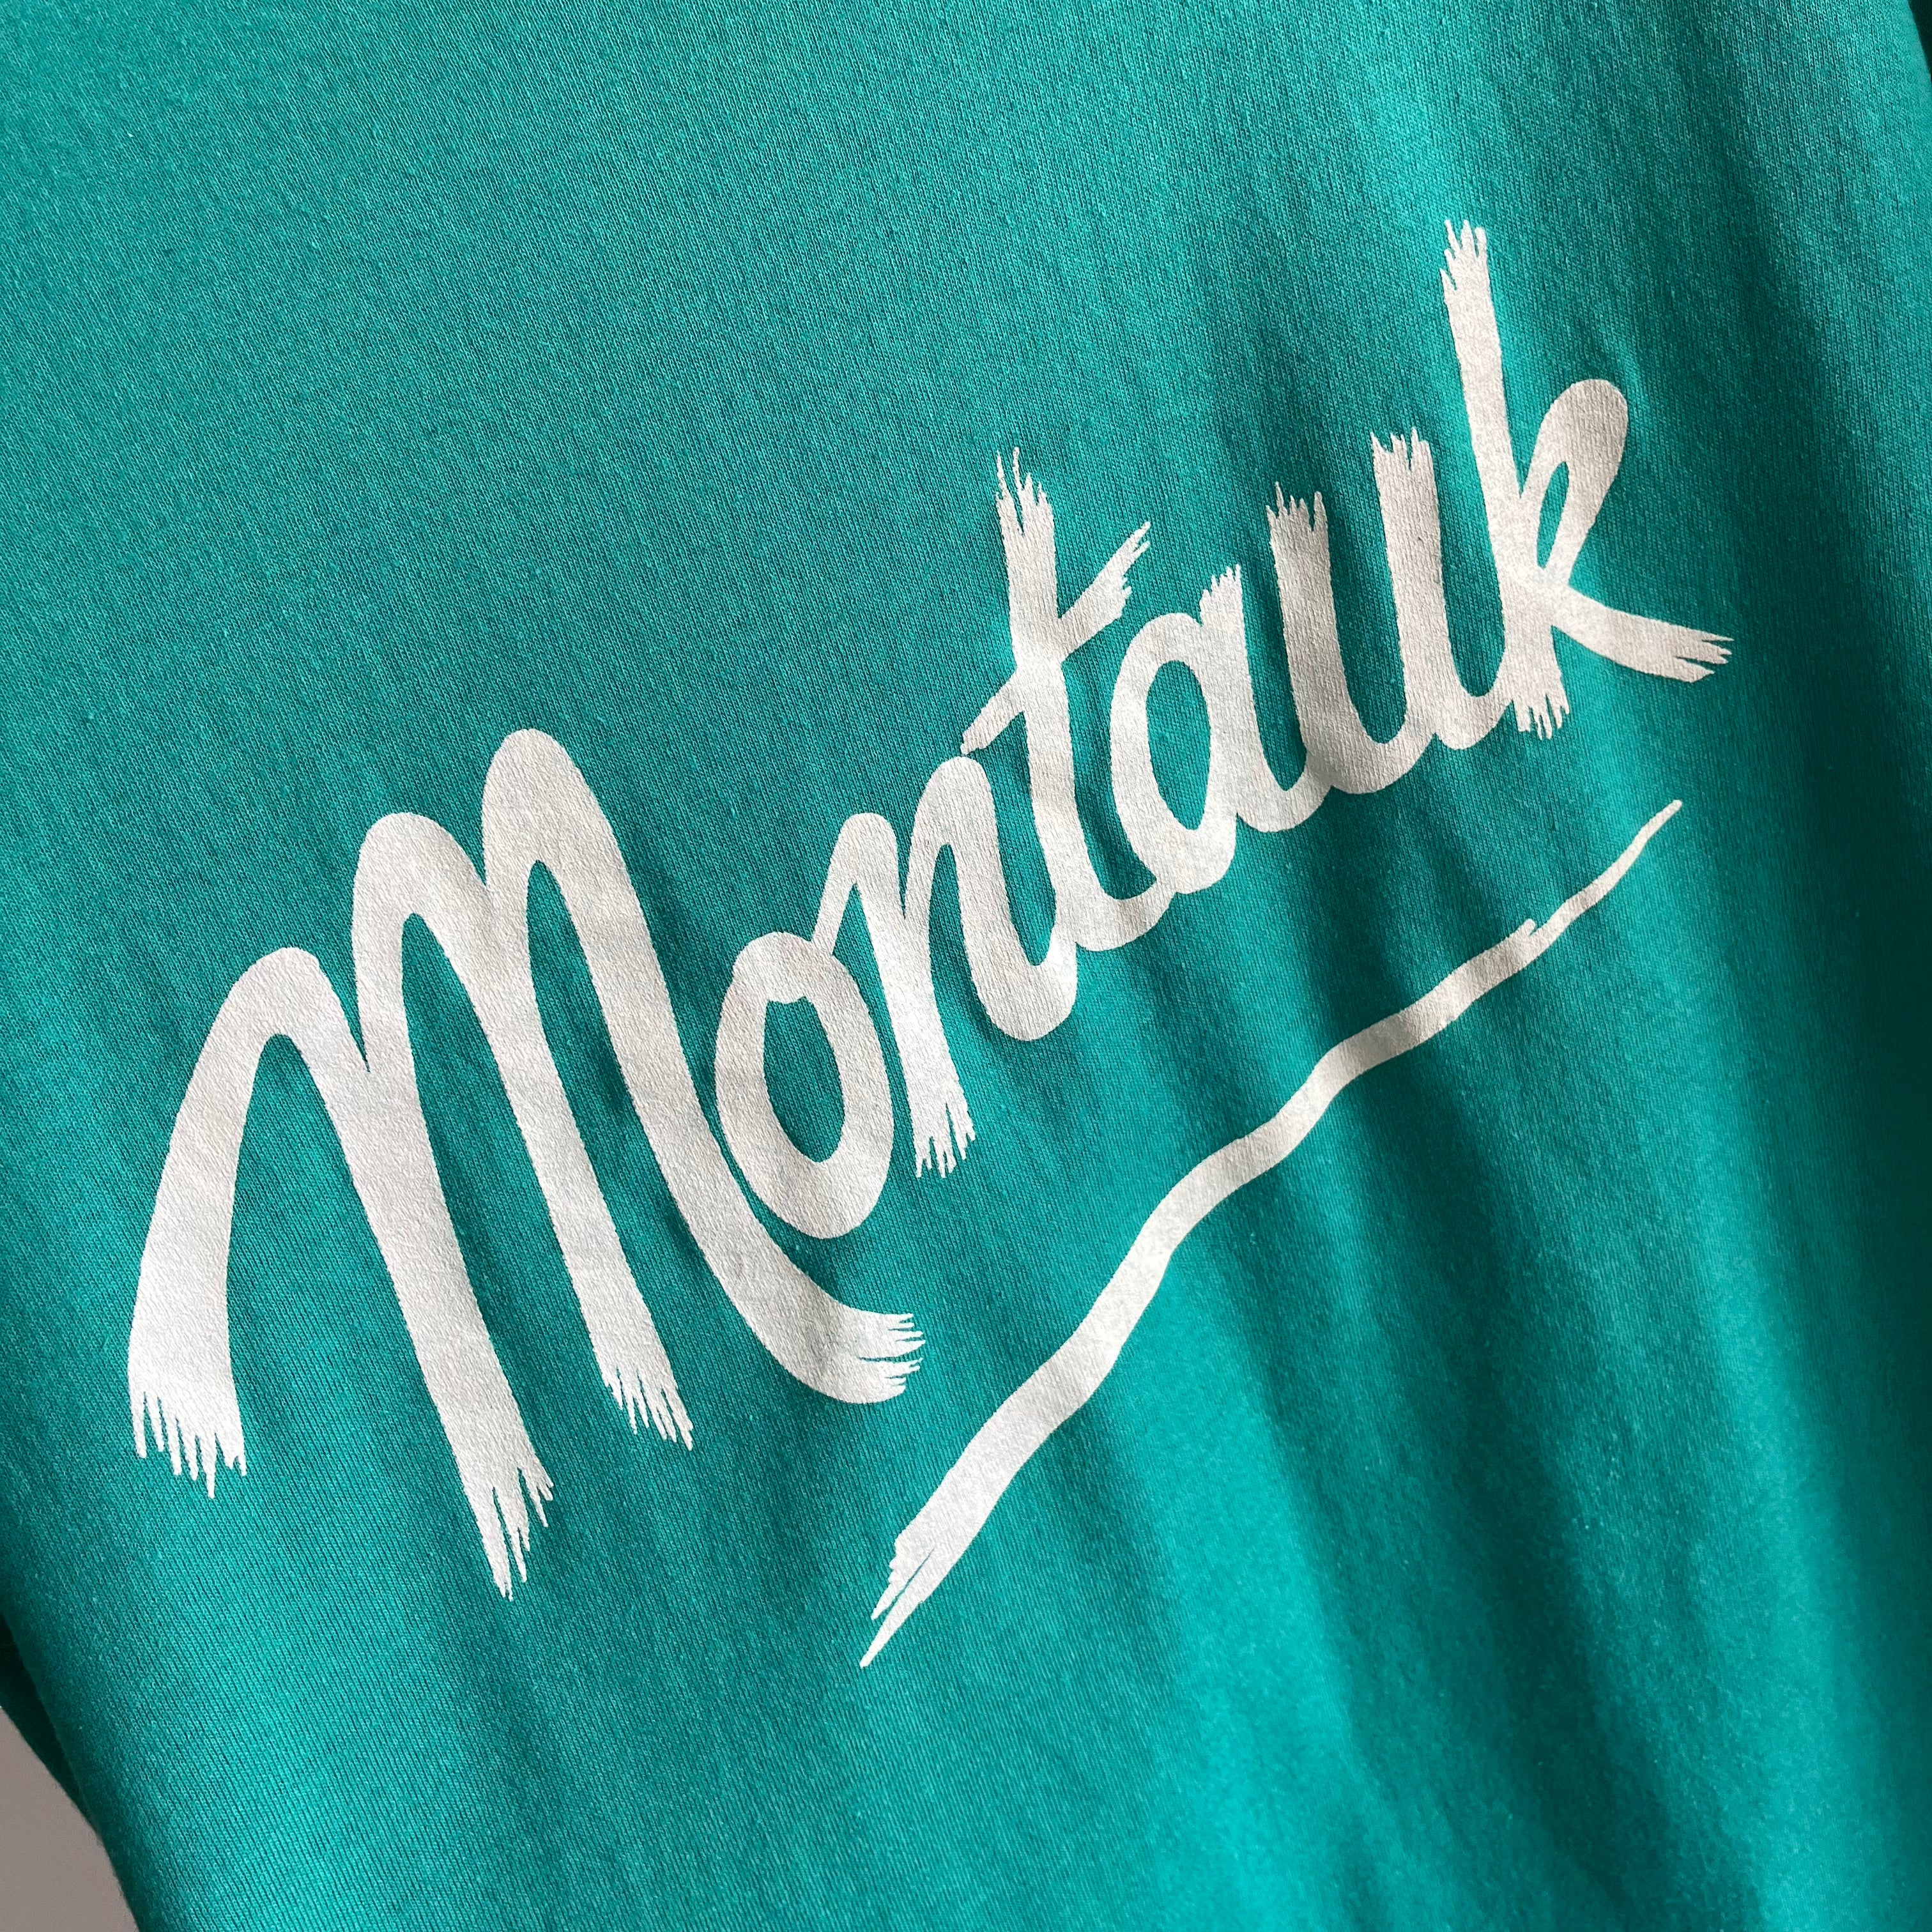 1980s Montauk T-Shirt by Screen Stars - THIS